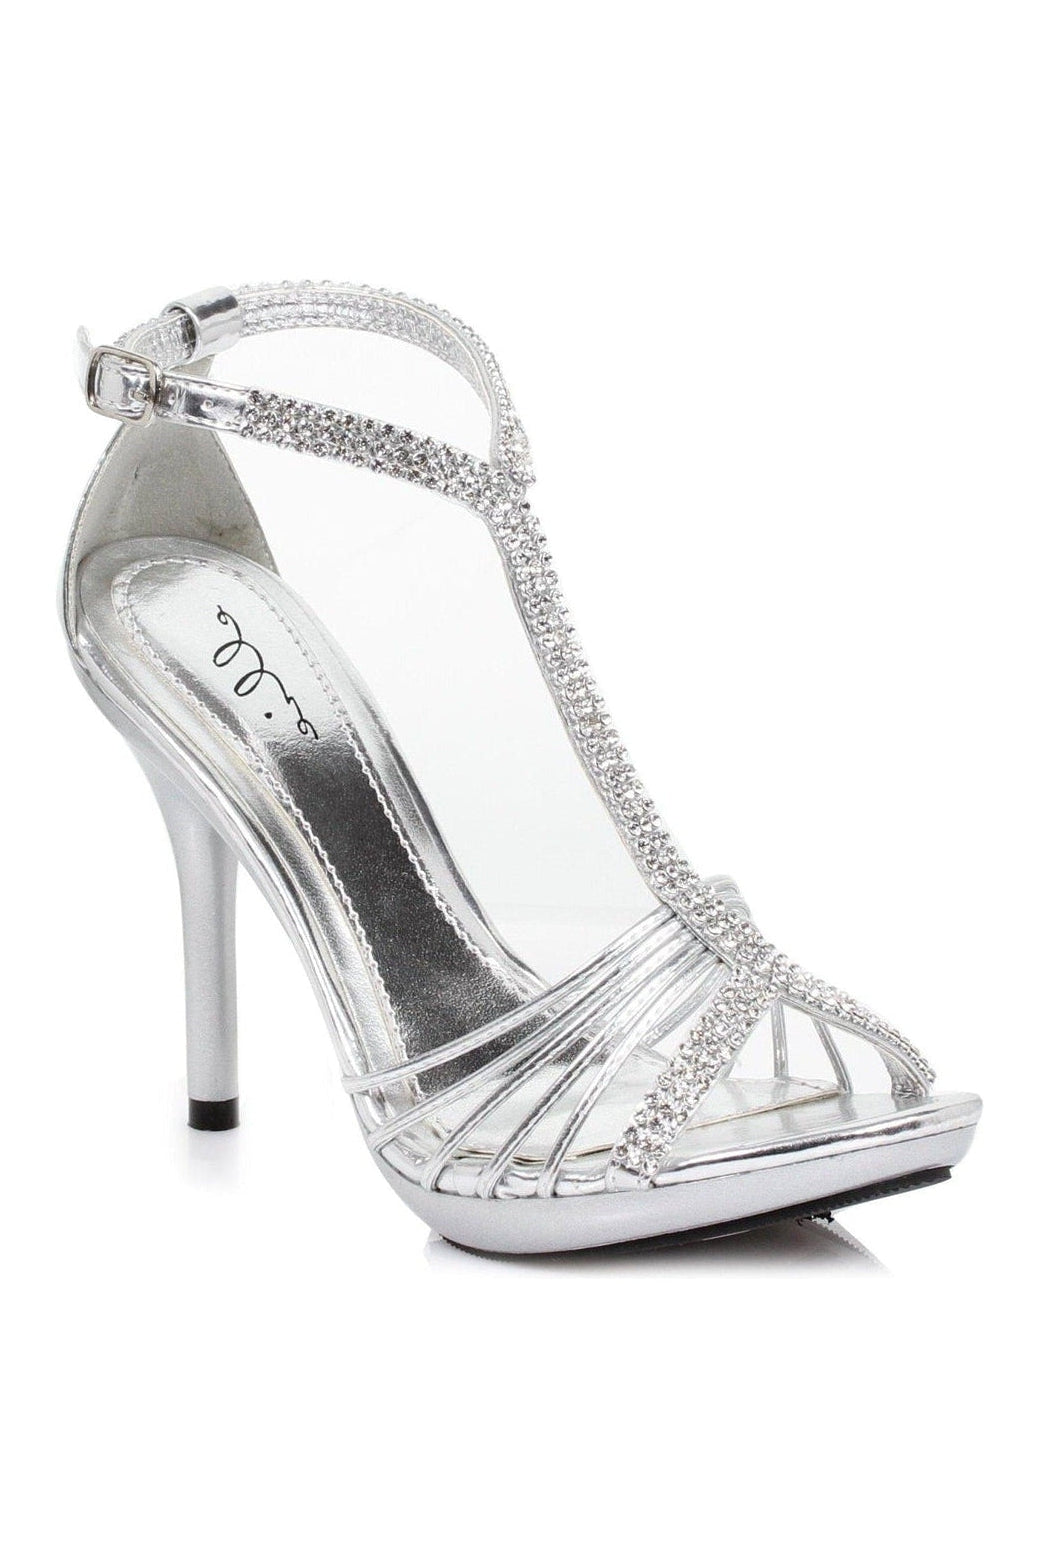 431-MAJESTIC Fashion Sandal | Silver Patent-Ellie Shoes-SEXYSHOES.COM